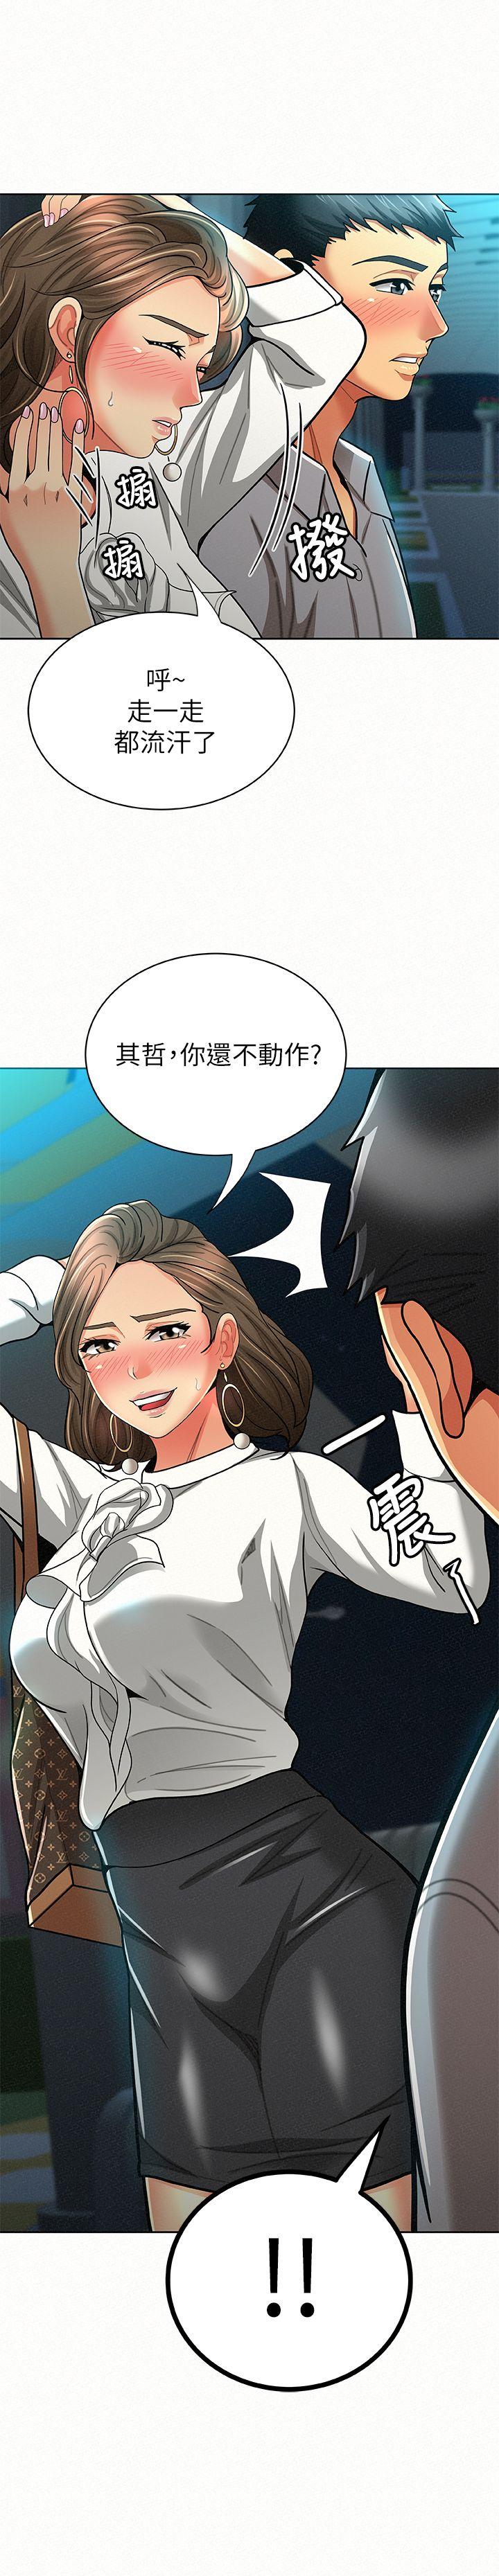 韩国污漫画 報告夫人 第15话-排长夫人的实战教学 1